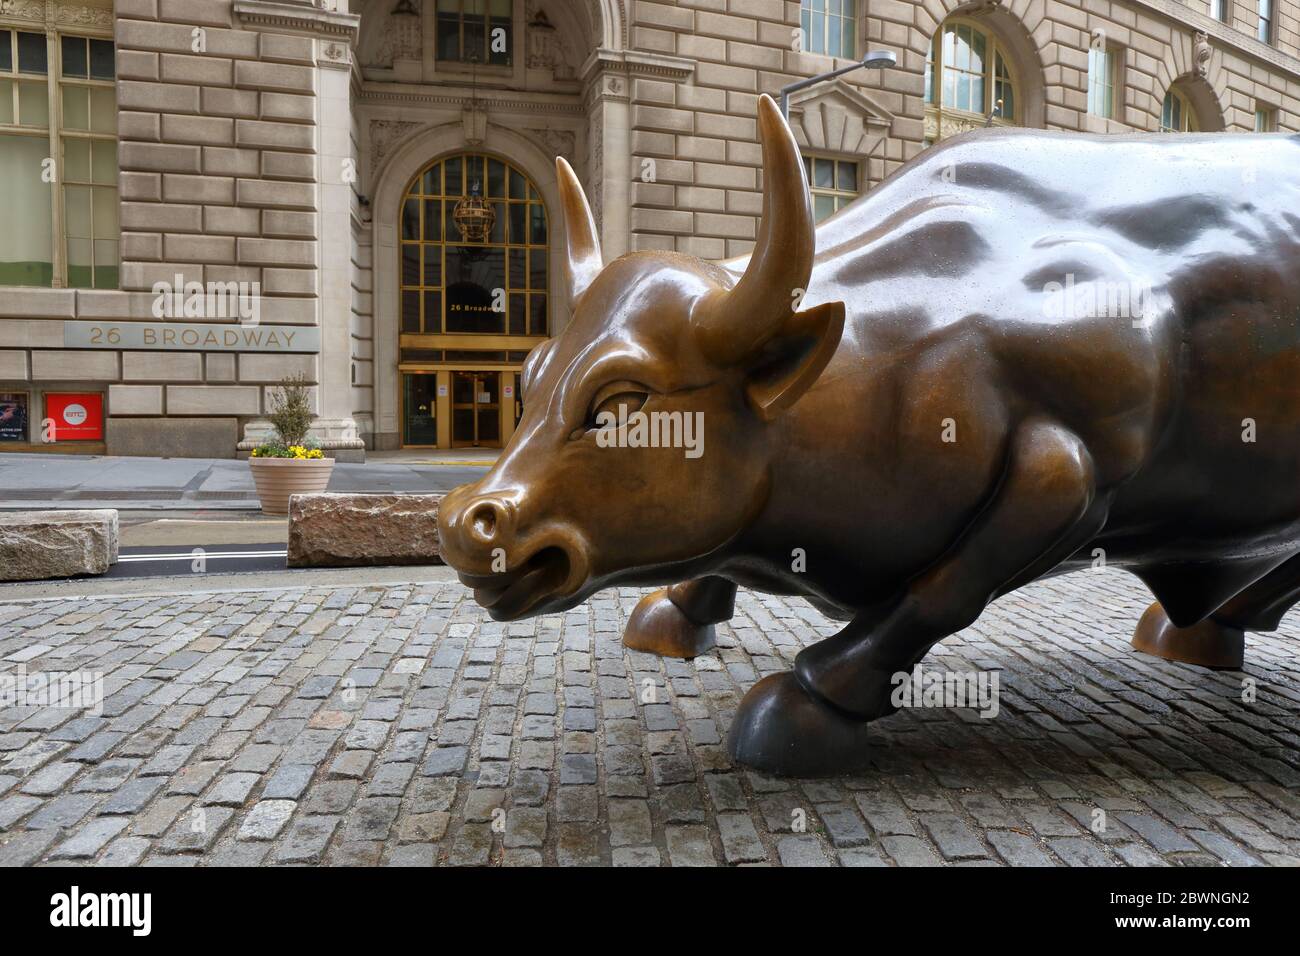 Charging Bull di Arturo di Modica, di fronte al 26 Broadway, New York. Una scultura in bronzo che è venuta a rappresentare Wall Street, nessuna gente Foto Stock